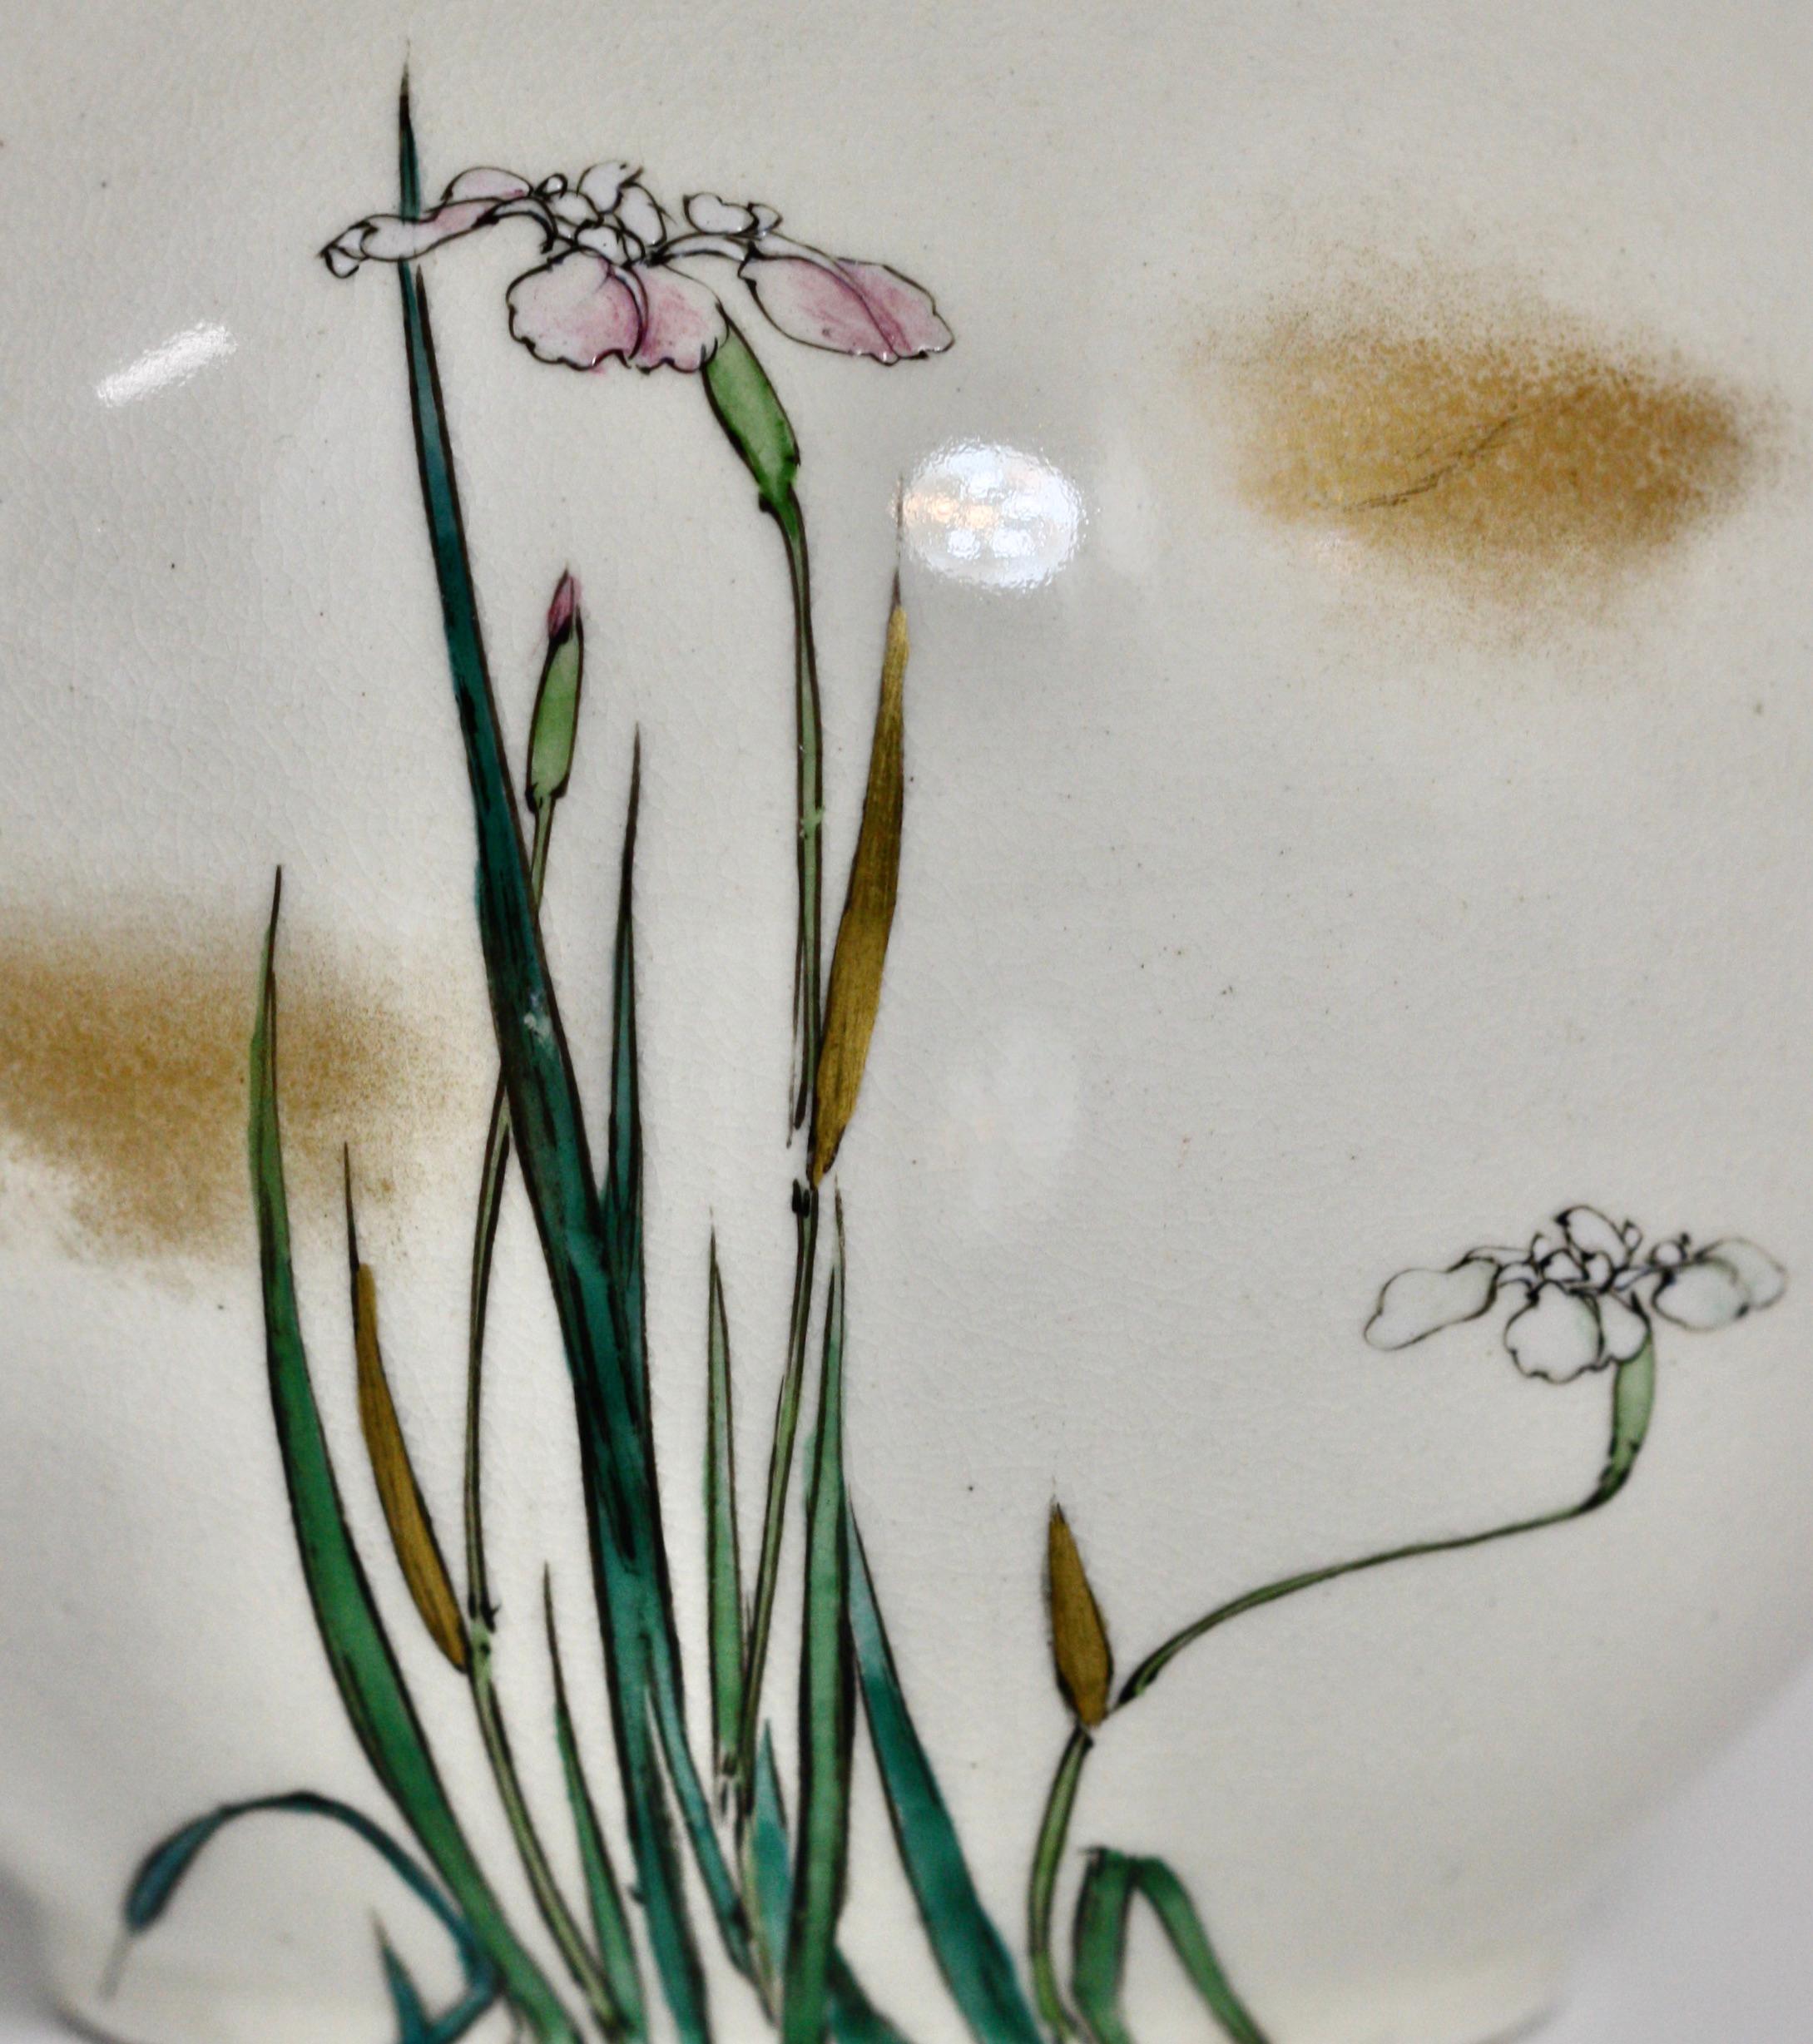 Kinkozan, japanische Satsuma-Vase,
Meiji-Periode (1868-1912)
Balusterform mit länglichem Hals, verziert mit polychromer Emaille und Vergoldung auf klarer Craquelé-Glasur in einem Jugendstil mit Blumen und Ranken;
Signiert Kinkozan mit einem